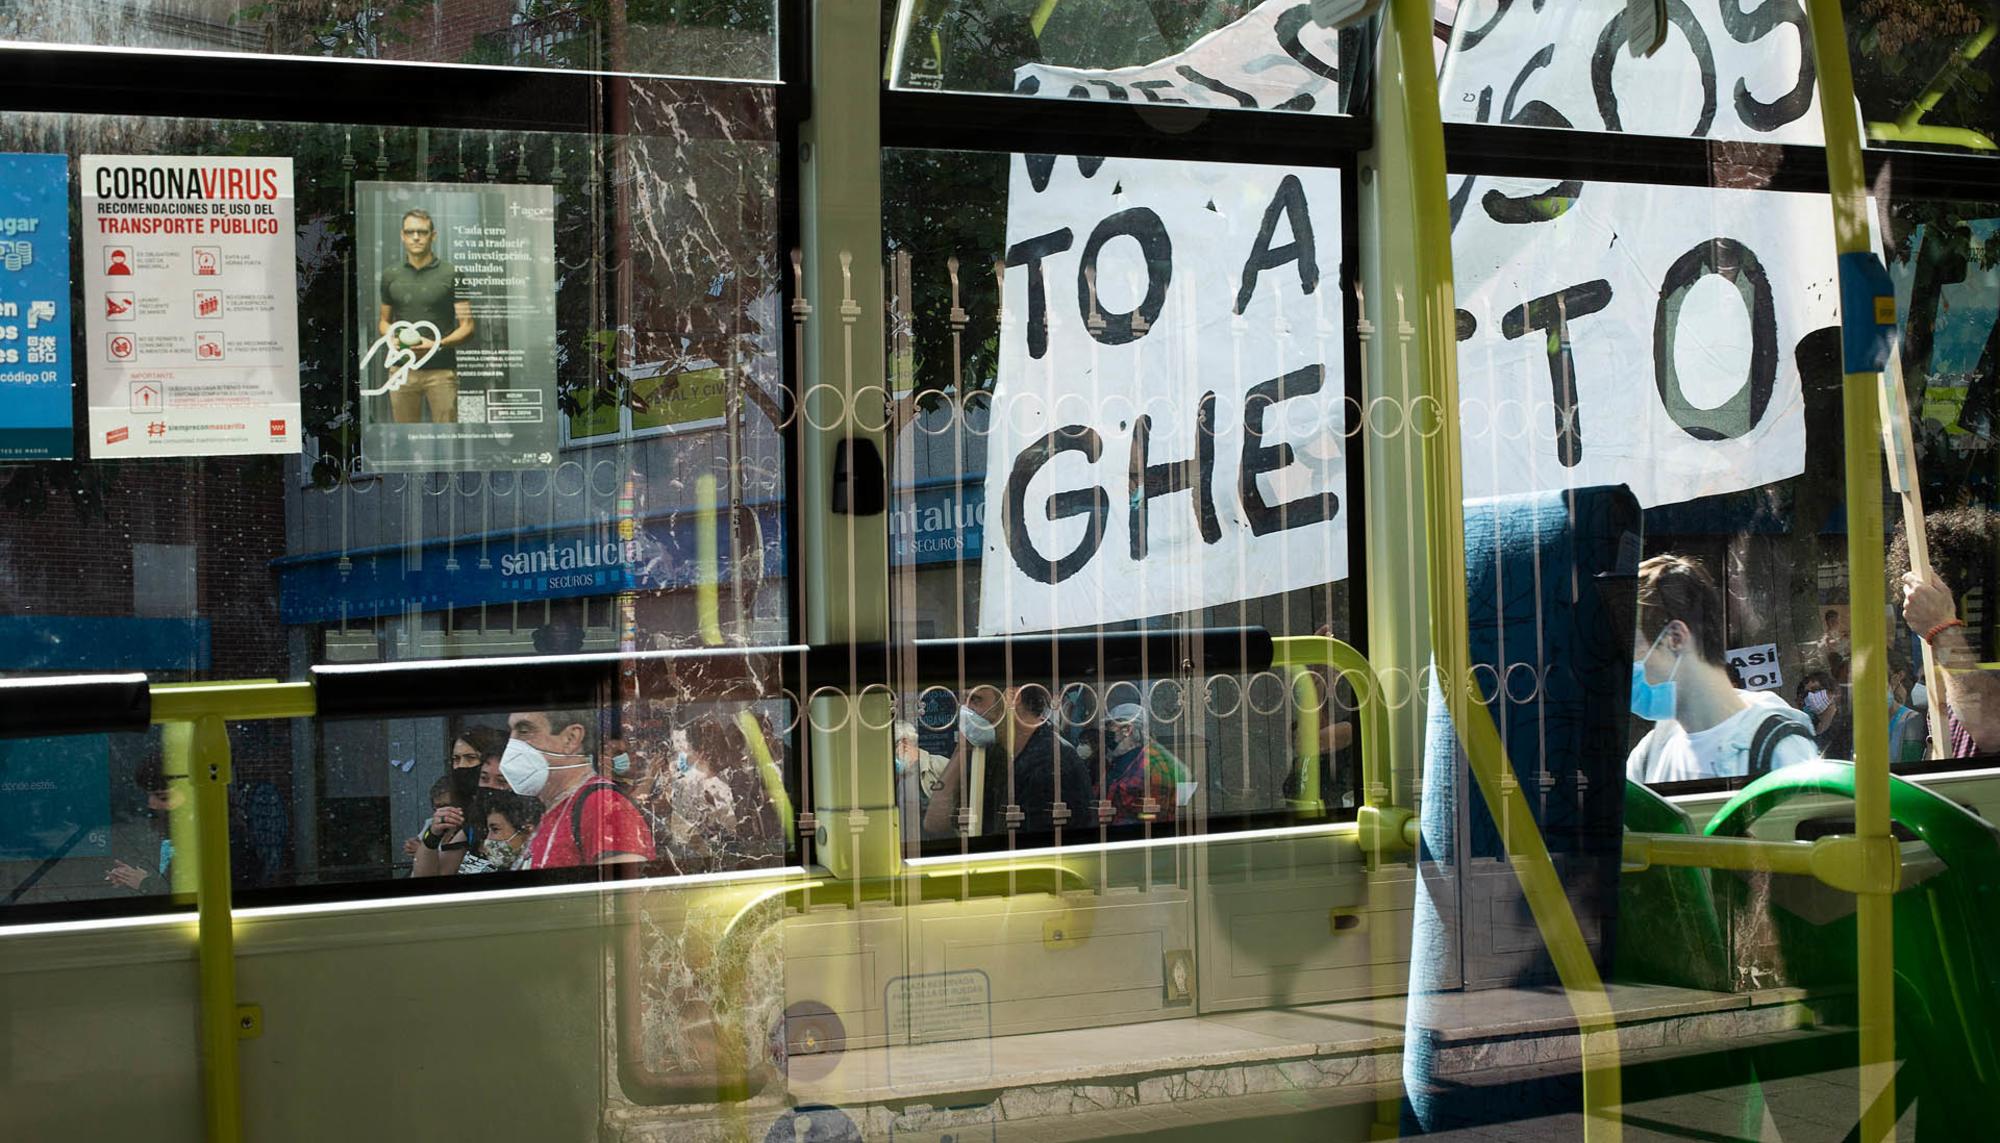 Manifestación contra la "segregación de clase" en Carabanchel, el domingo 27 de septiembre de 2020. - 8